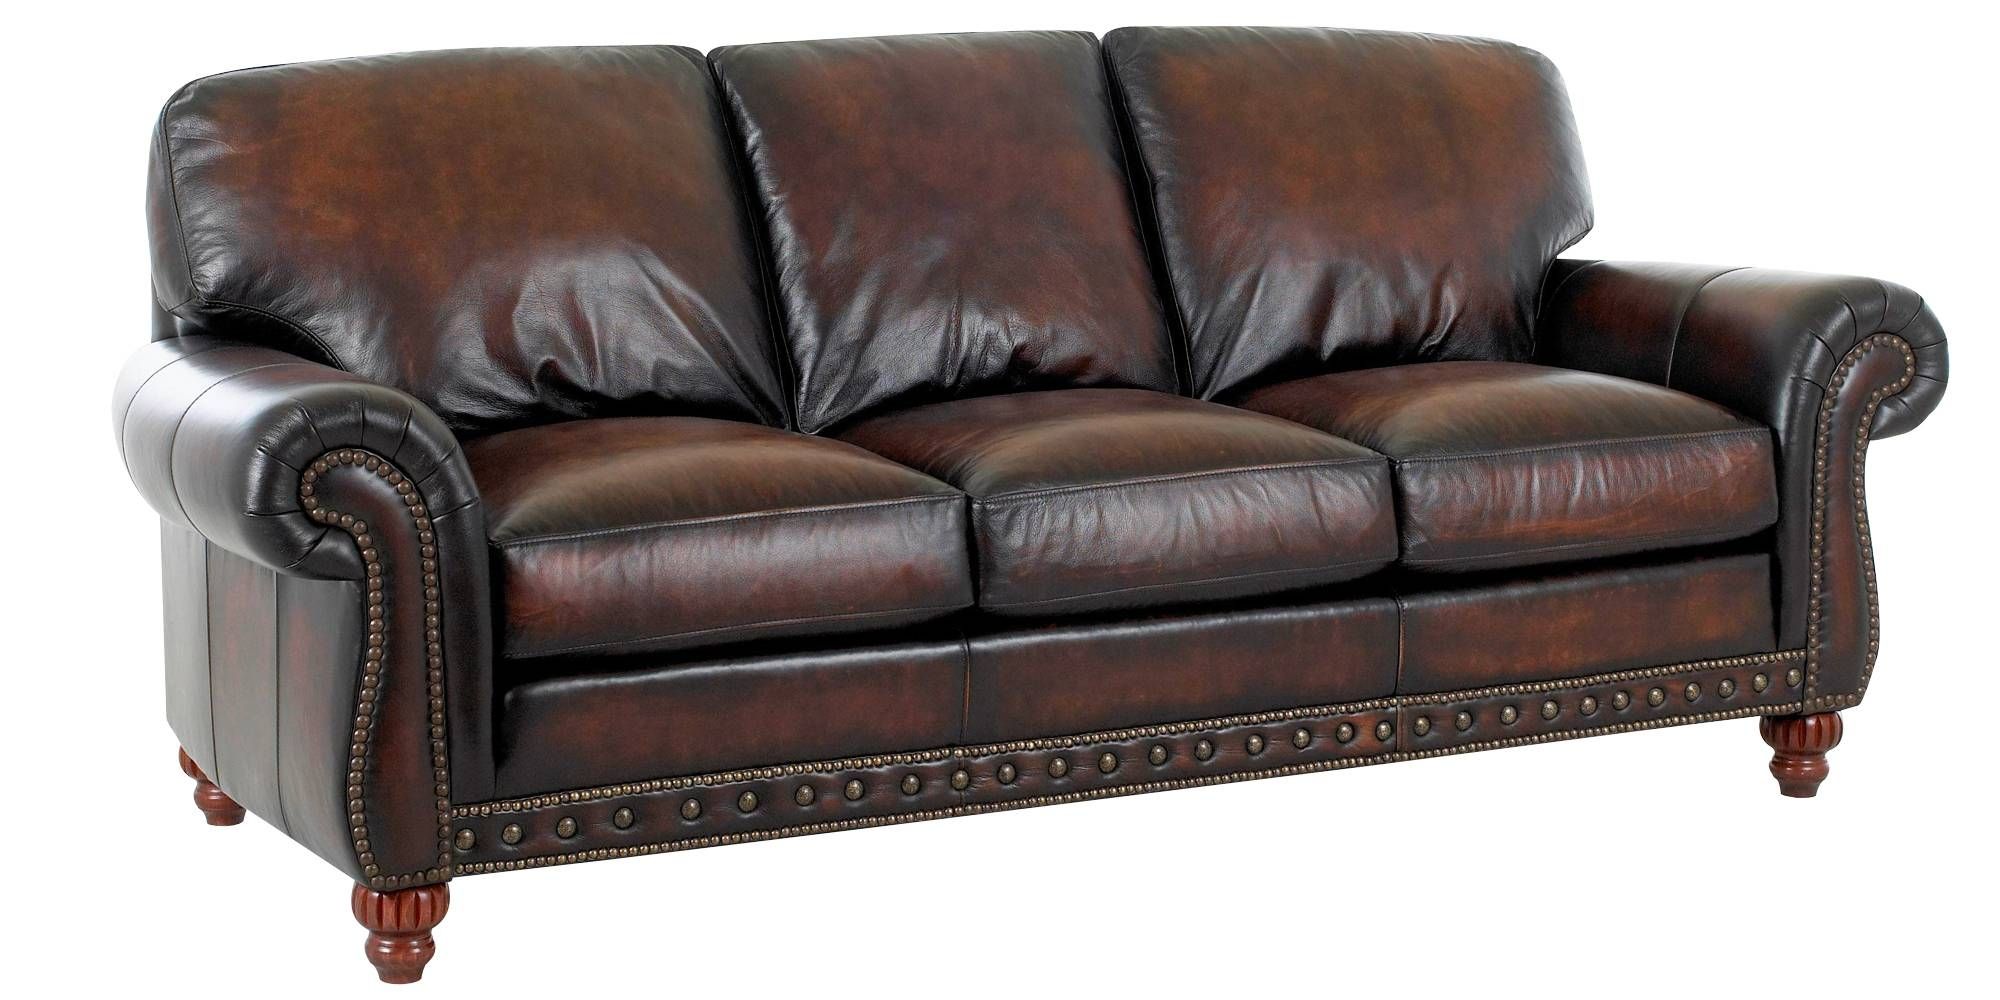 european style leather sofa set